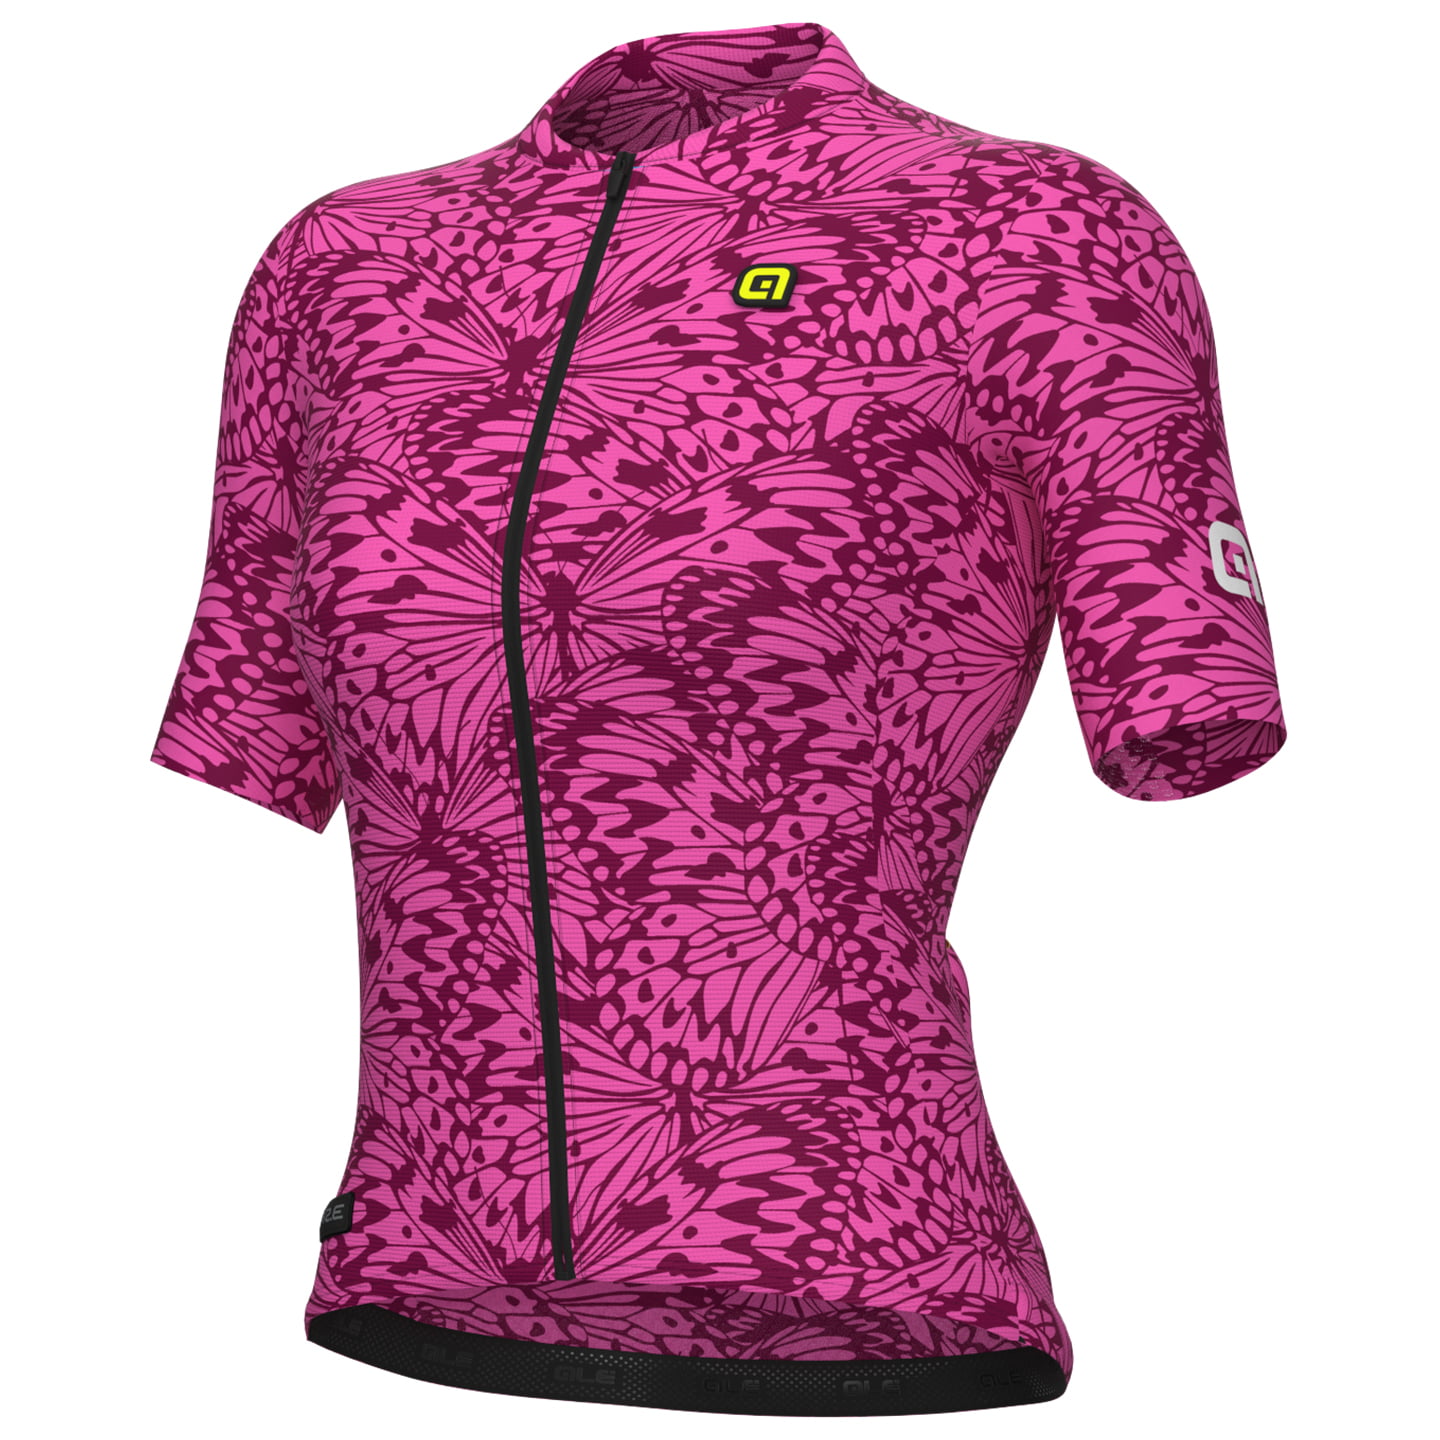 ALE Papillon Women’s Jersey Women’s Short Sleeve Jersey, size XL, Cycle jersey, Bike gear